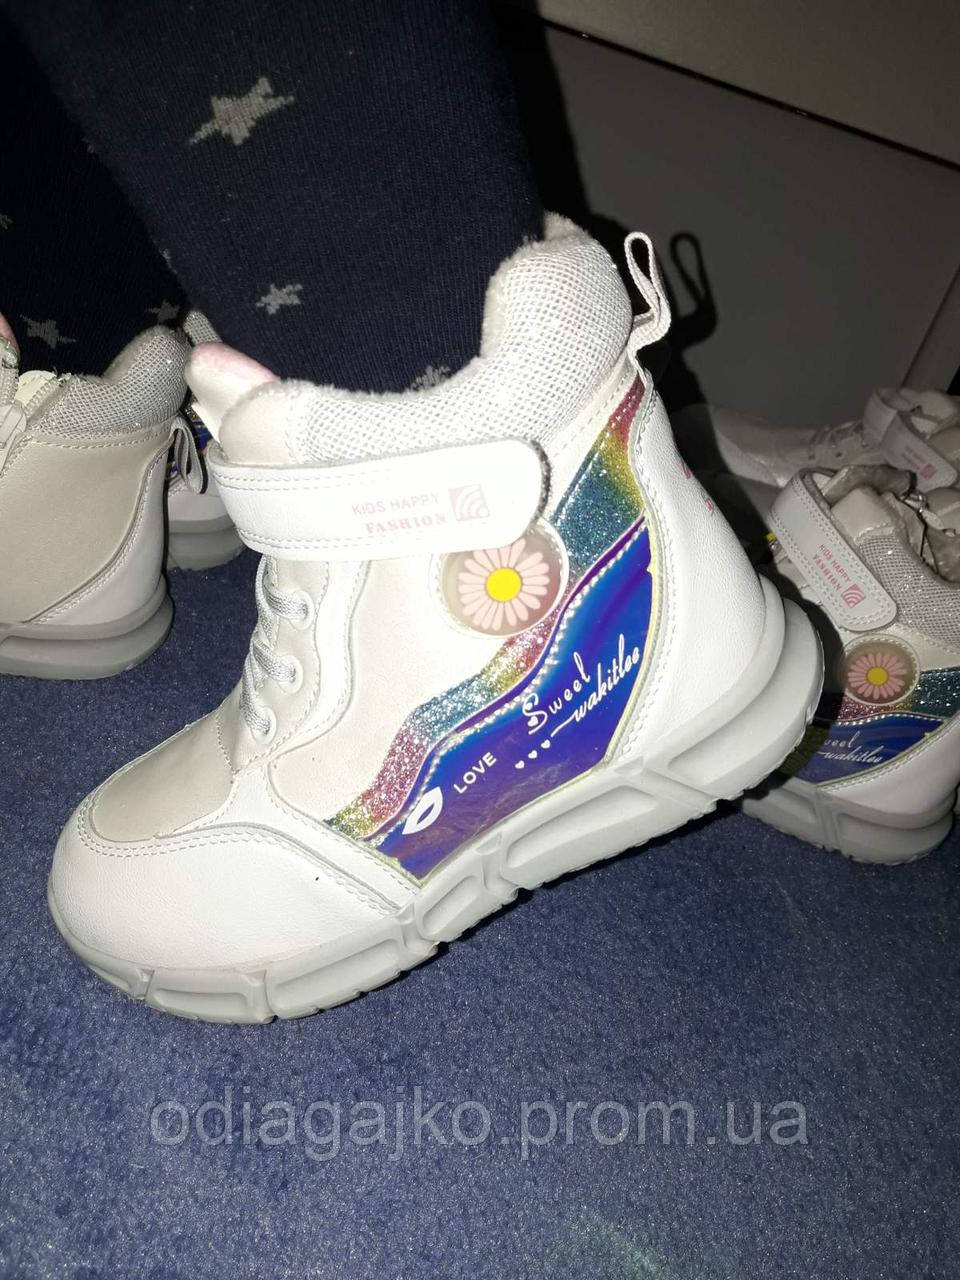 Зимові дитячі кросівки/черевики Jong-Golf для дівчинки БЕЛИЕ 28,29 на липучках